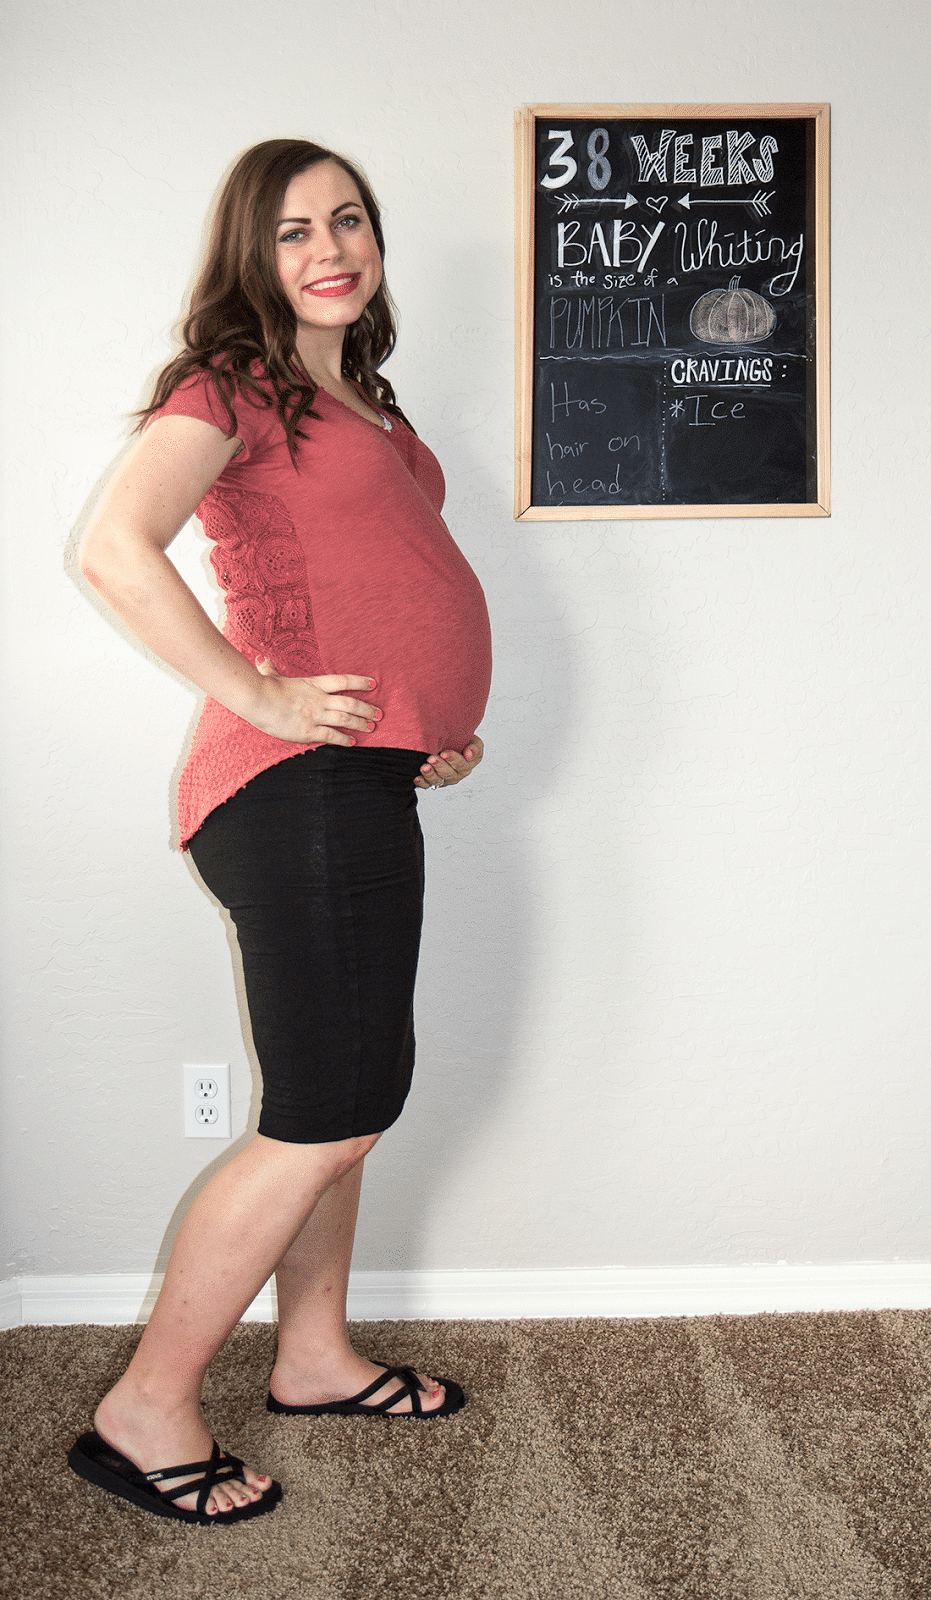 Pregnancy Update: 38 Weeks